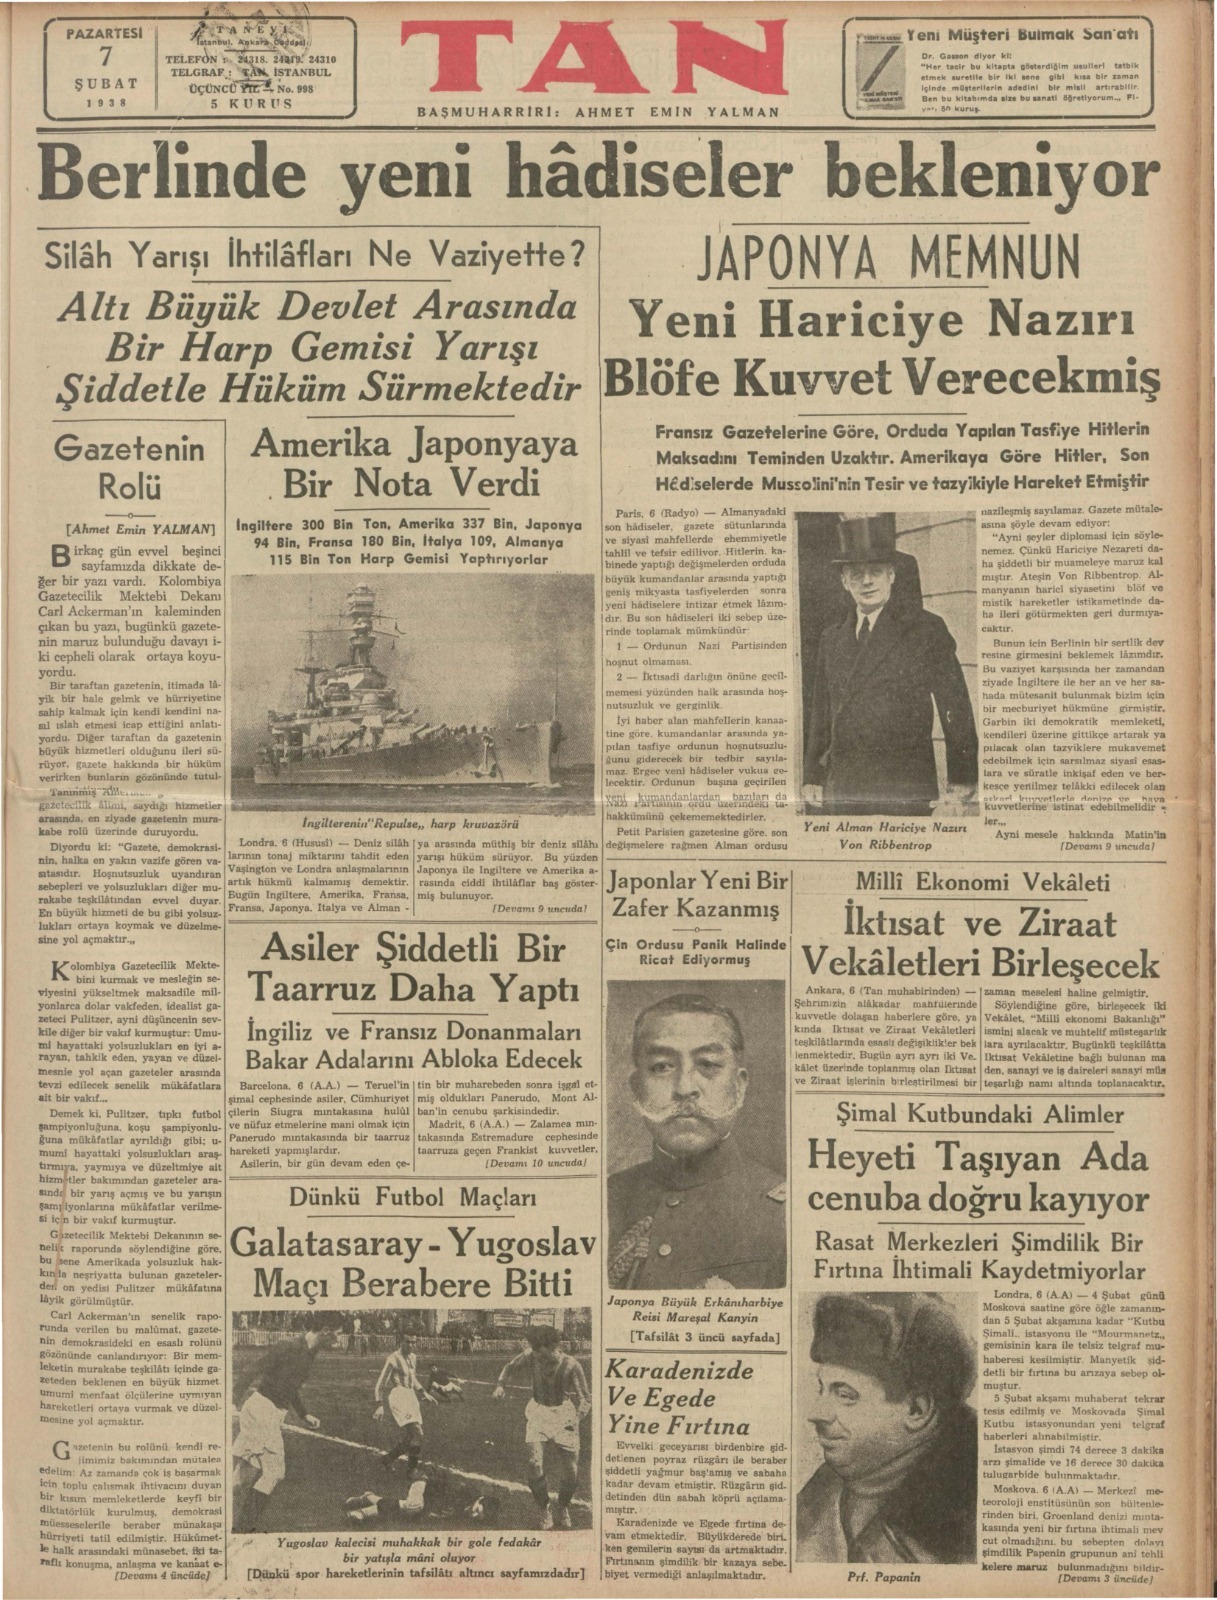 Tarihe ışık tutan arşiv: 1928-1942 yıllarından 18422 cilt gazete paylaşıma açıldı | Atlas | Gündem